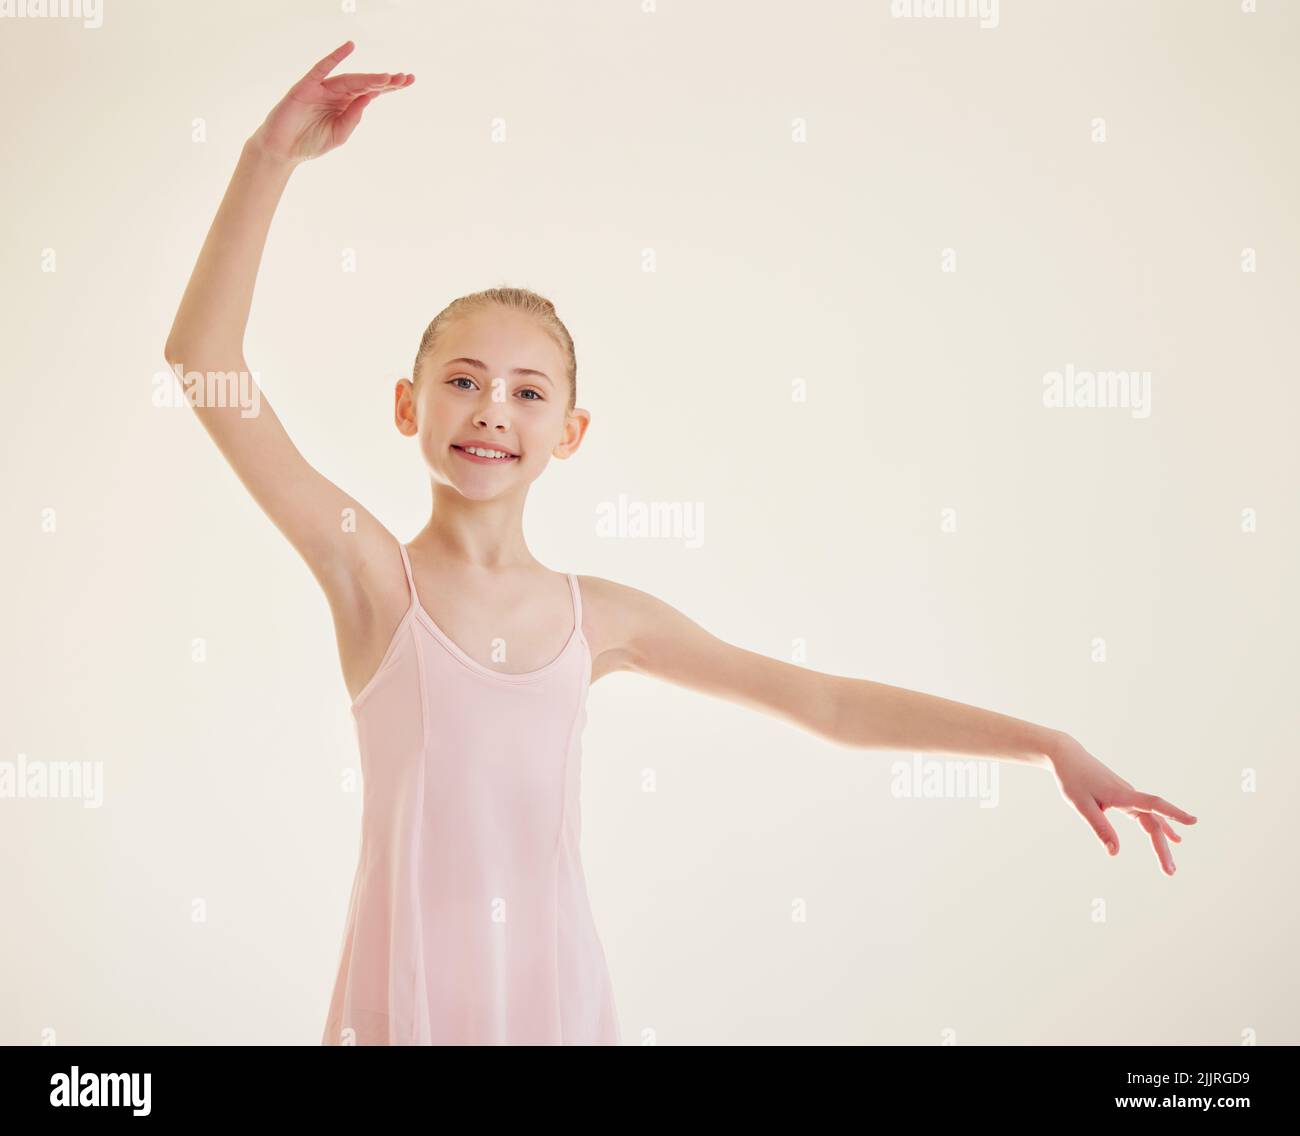 Balletttechnik ist willkürlich und sehr schwierig. Eine junge Ballerina tanzt im Studio. Stockfoto